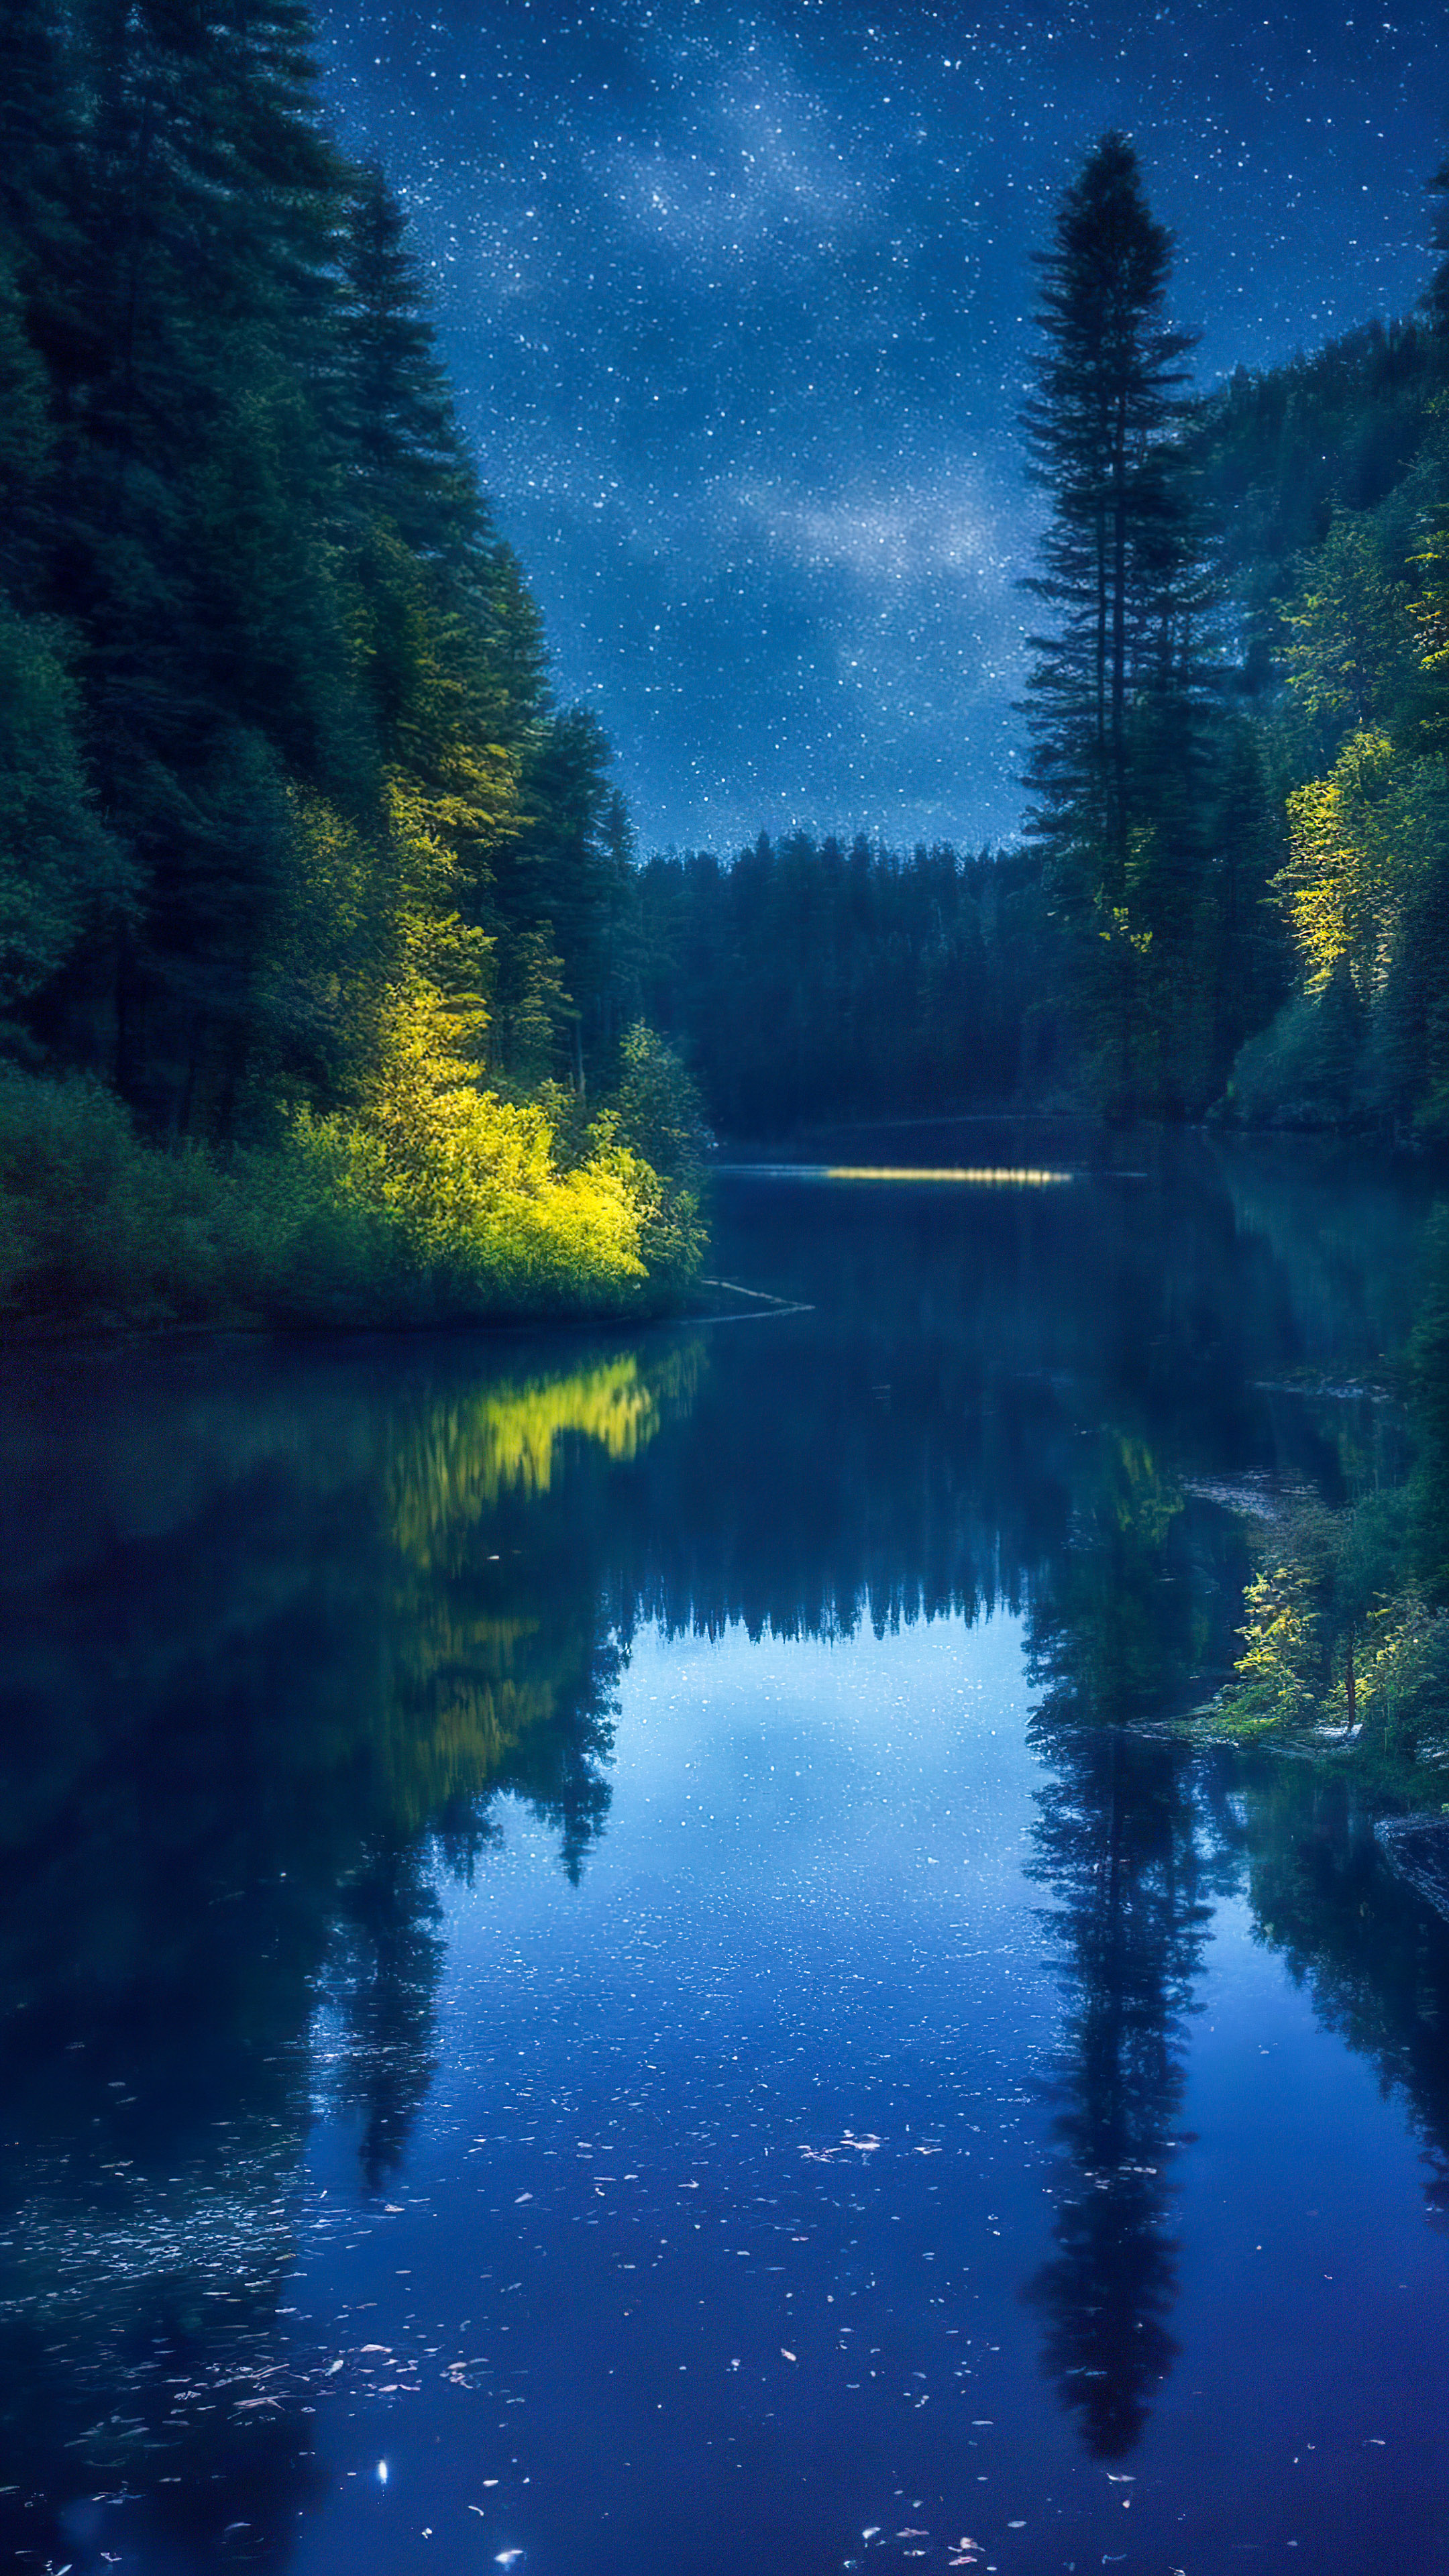 Perdez-vous dans la sérénité avec notre arrière-plan pour mobile, présentant une rivière paisible serpentant à travers une forêt dense la nuit, reflétant le ciel nocturne étincelant.